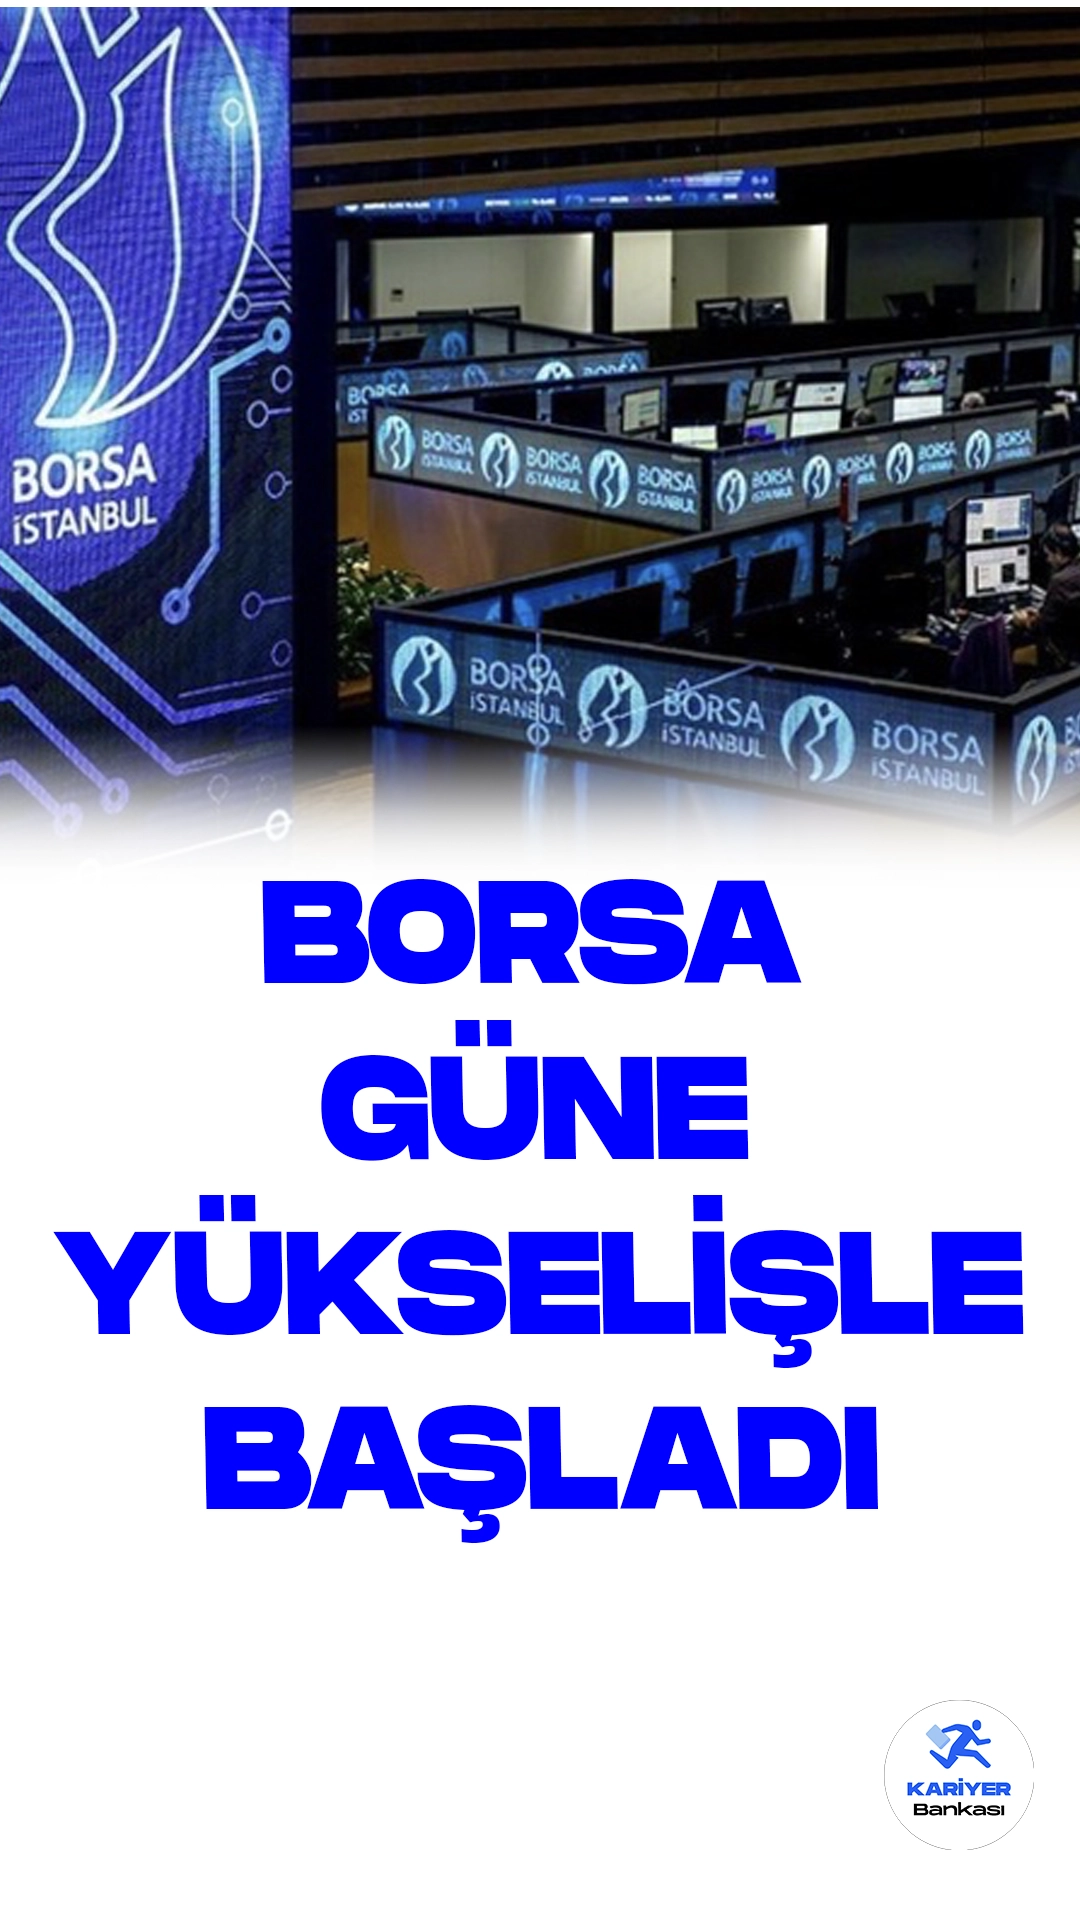 Borsa İstanbul'da BIST 100 Endeksi Güne Yükselişle Başladı.Borsa İstanbul'da BIST 100 endeksi, güne yüzde 1,23 artışla 7.516,50 puandan başladı.